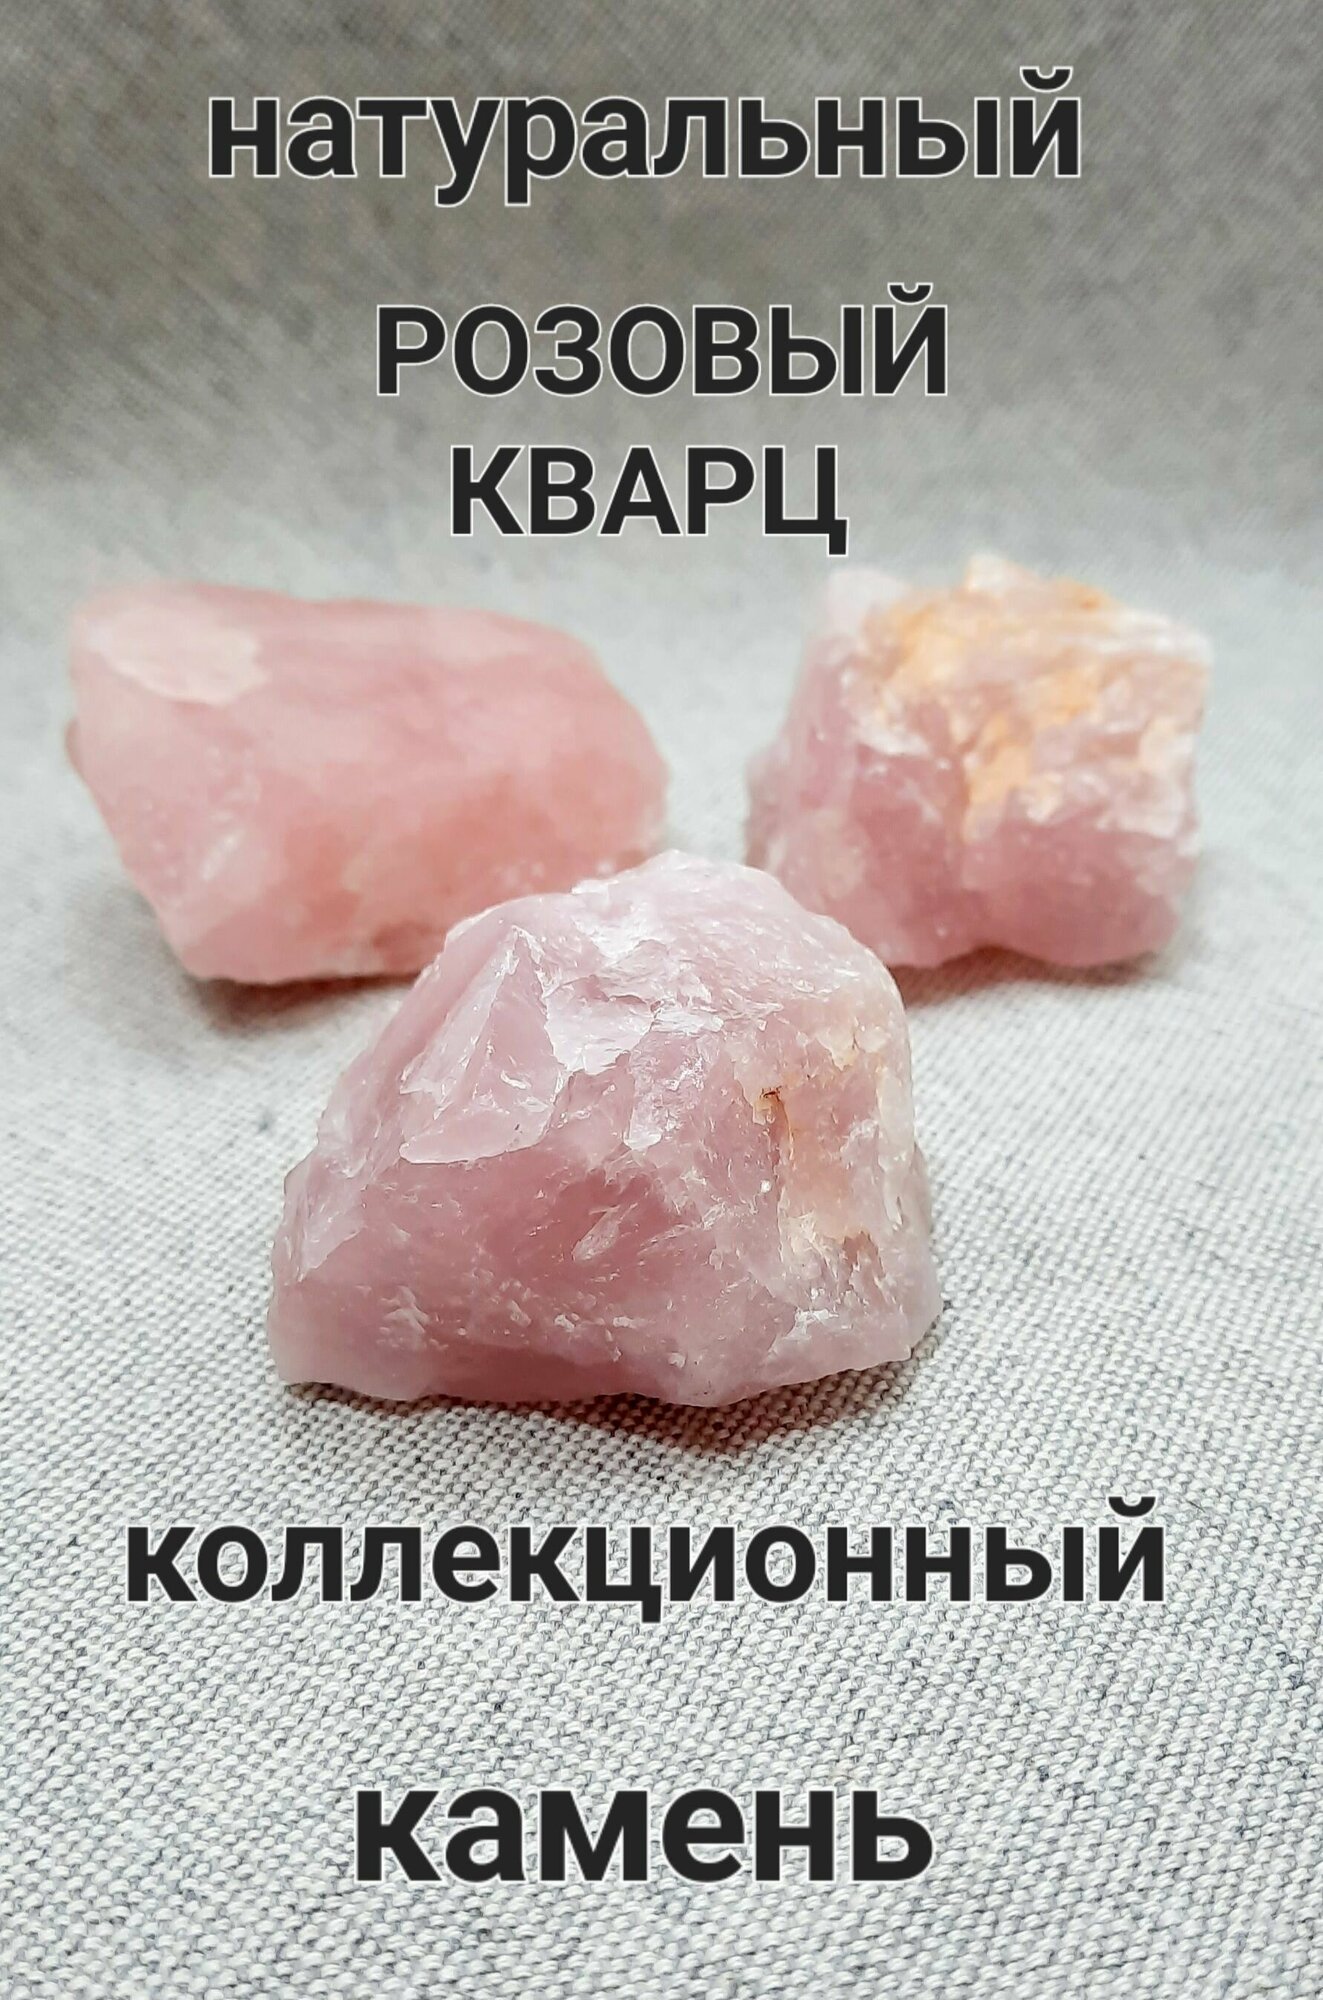 Розовый кварц натуральный, камень коллекционный(натуральный минерал)